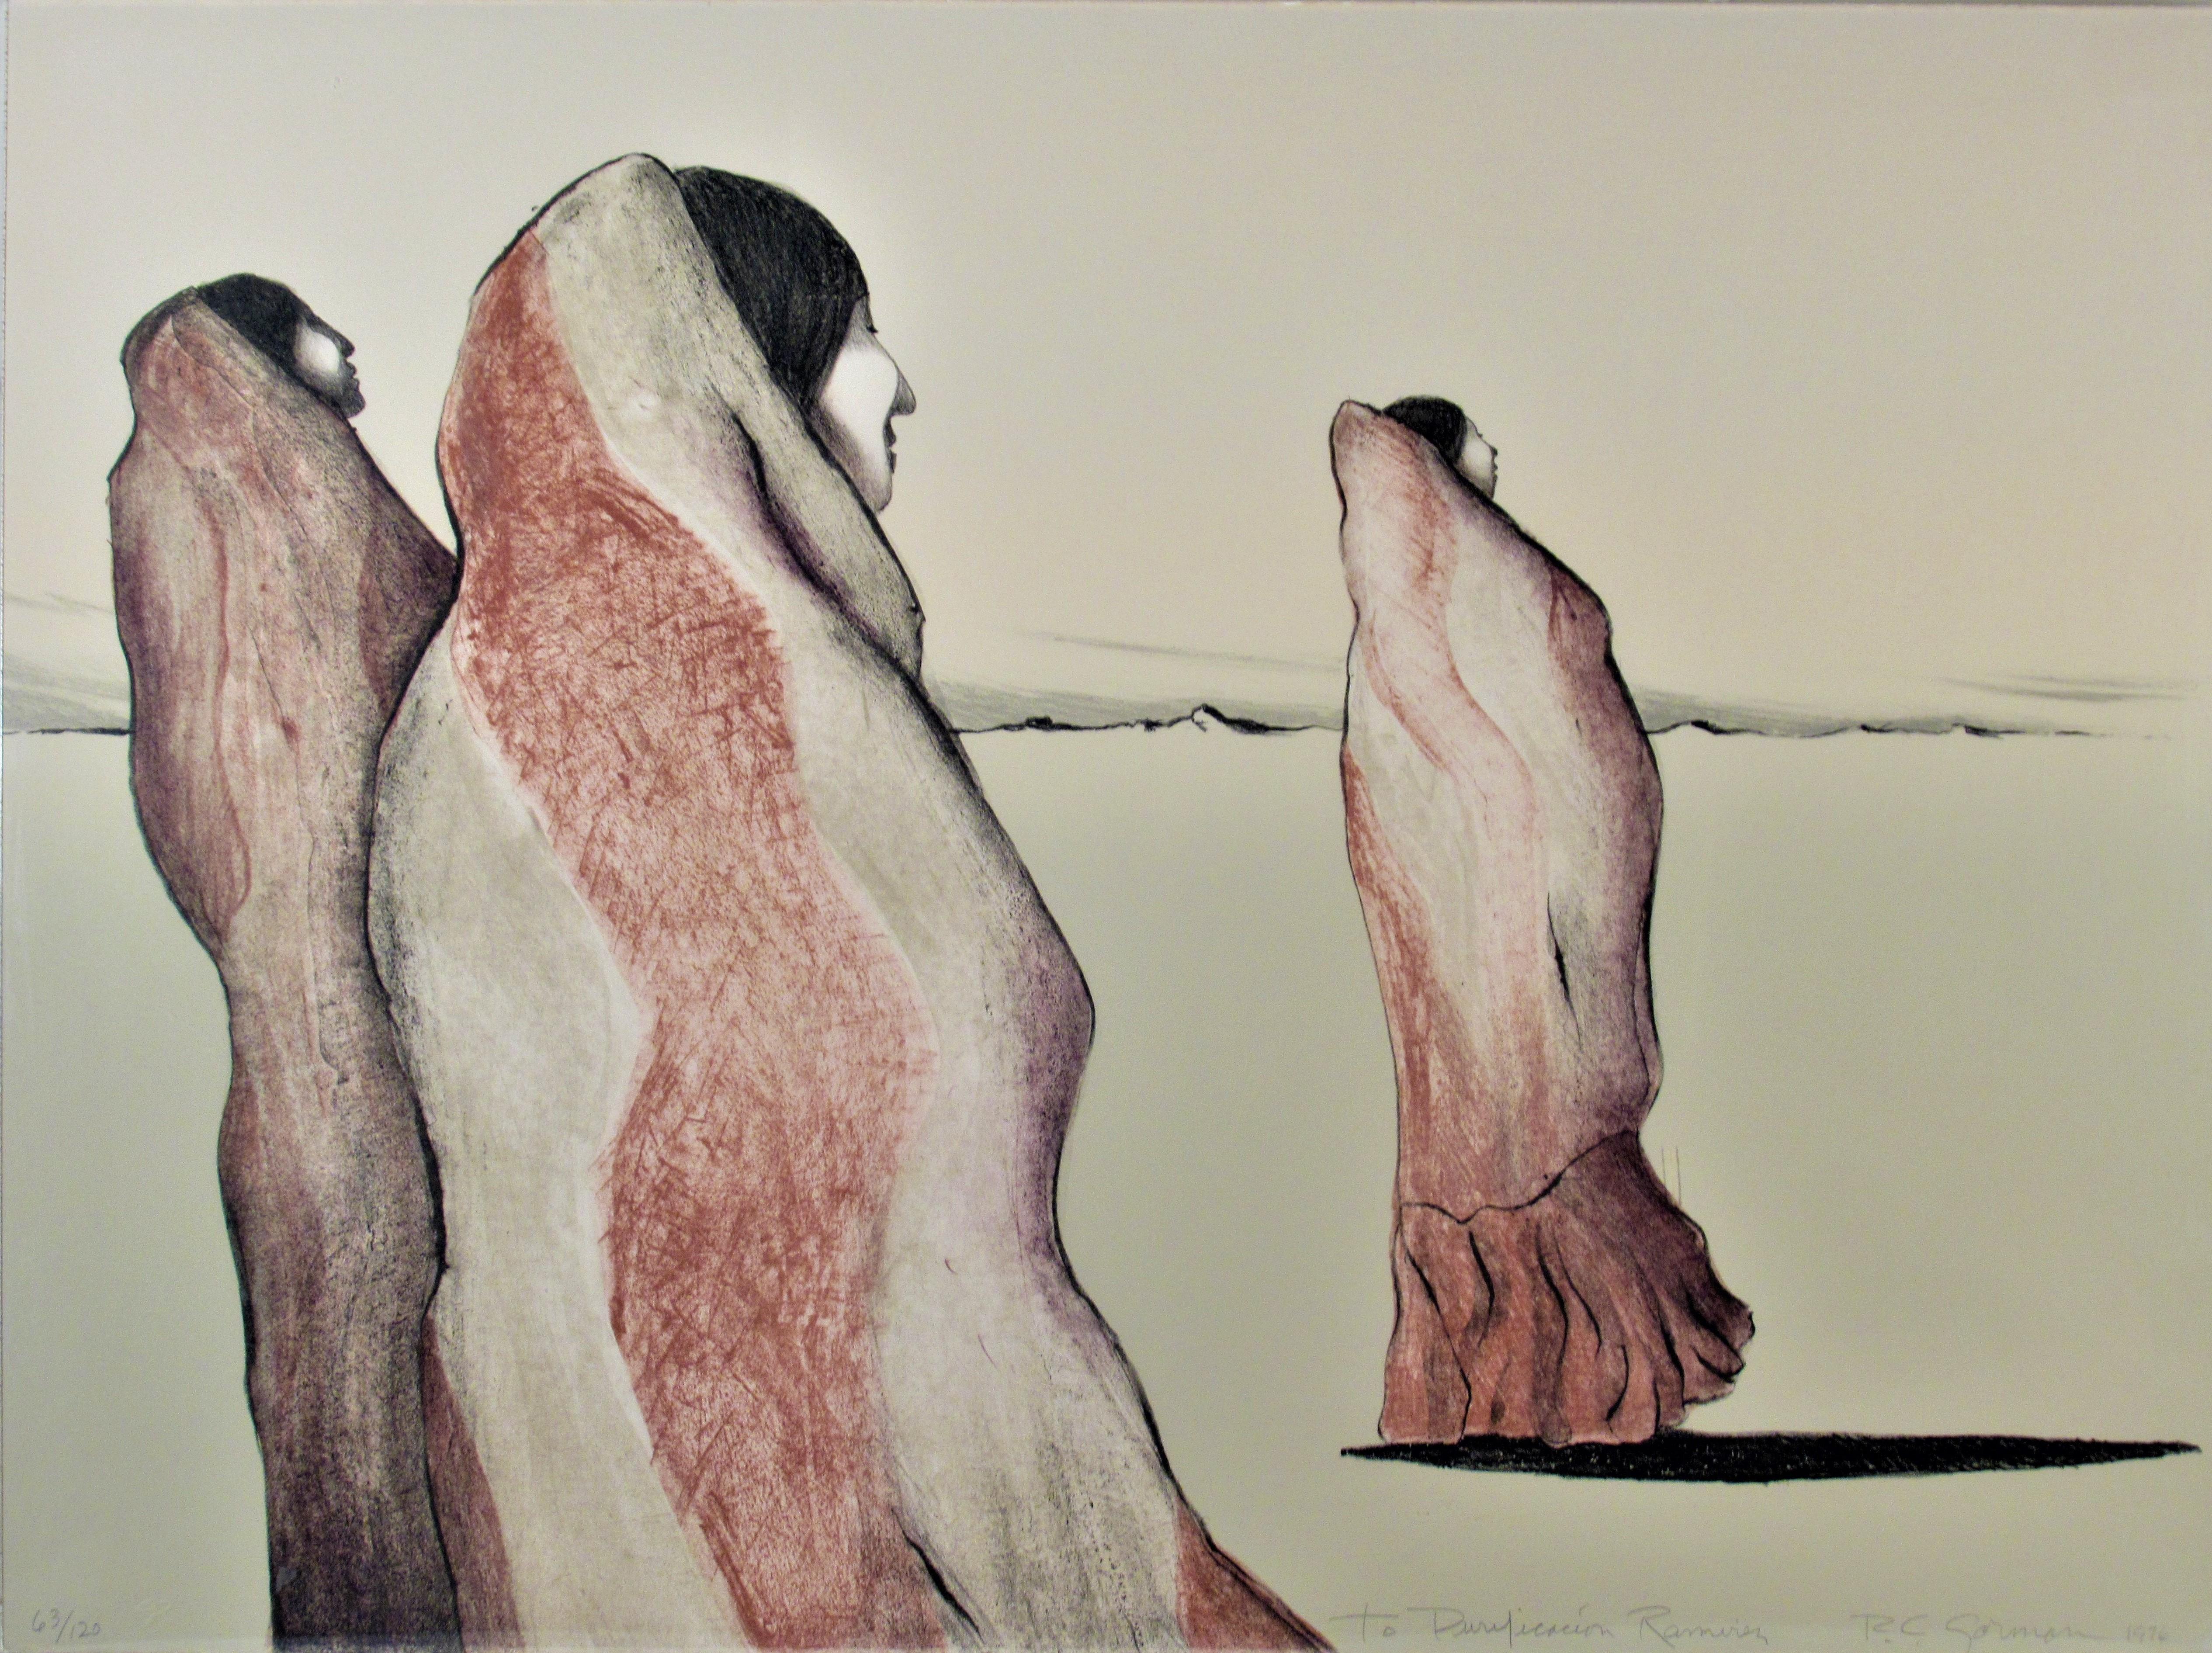 Desert Wüsten Frauen – Print von Rudolph Carl Gorman